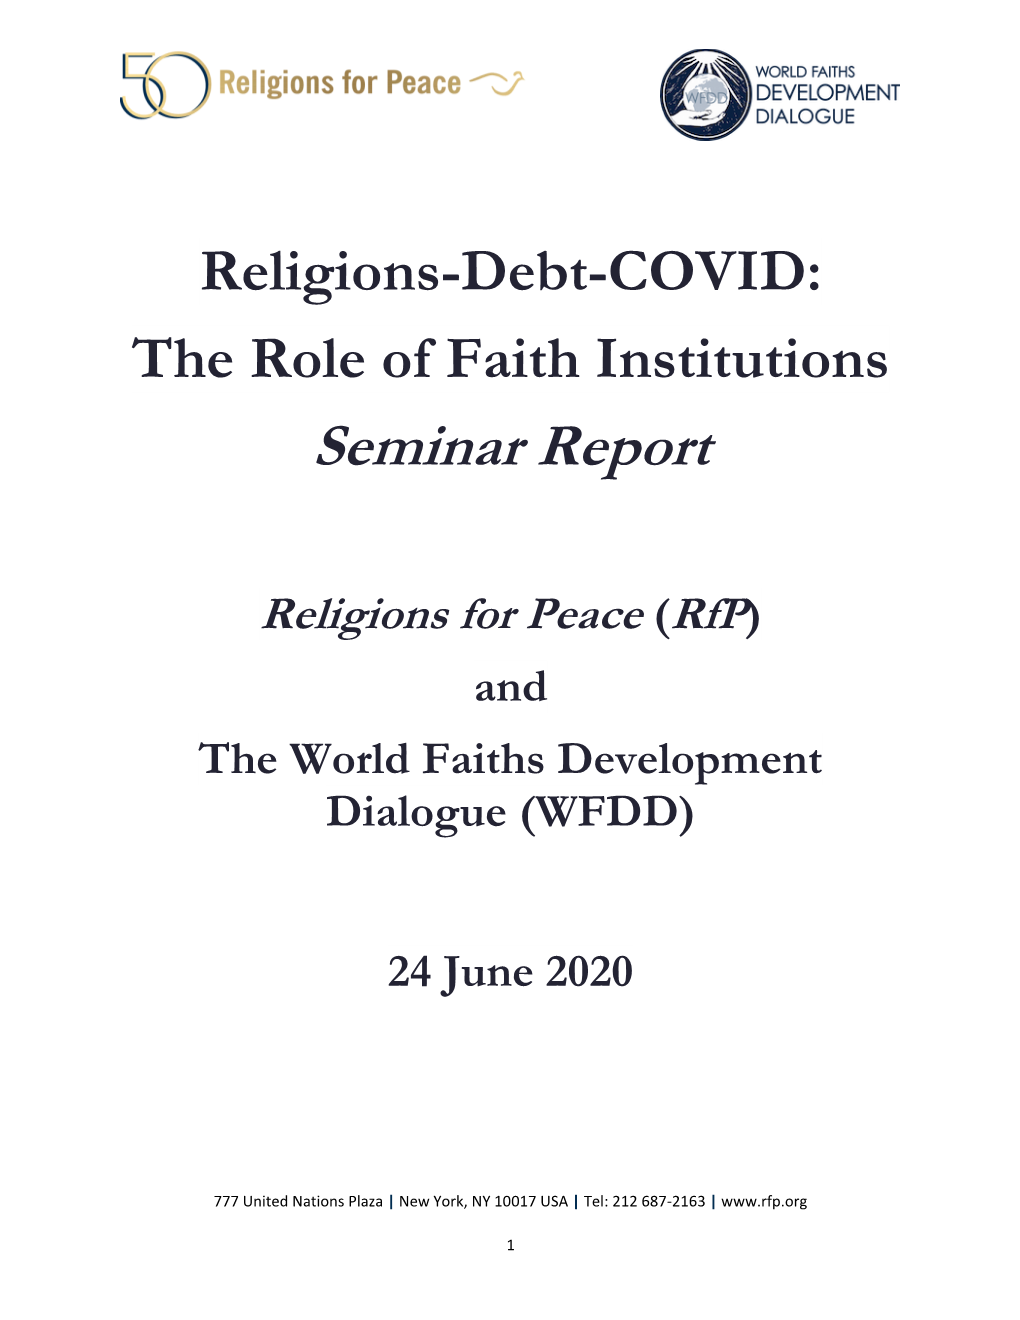 Religion-Debt-COVID Seminar Report